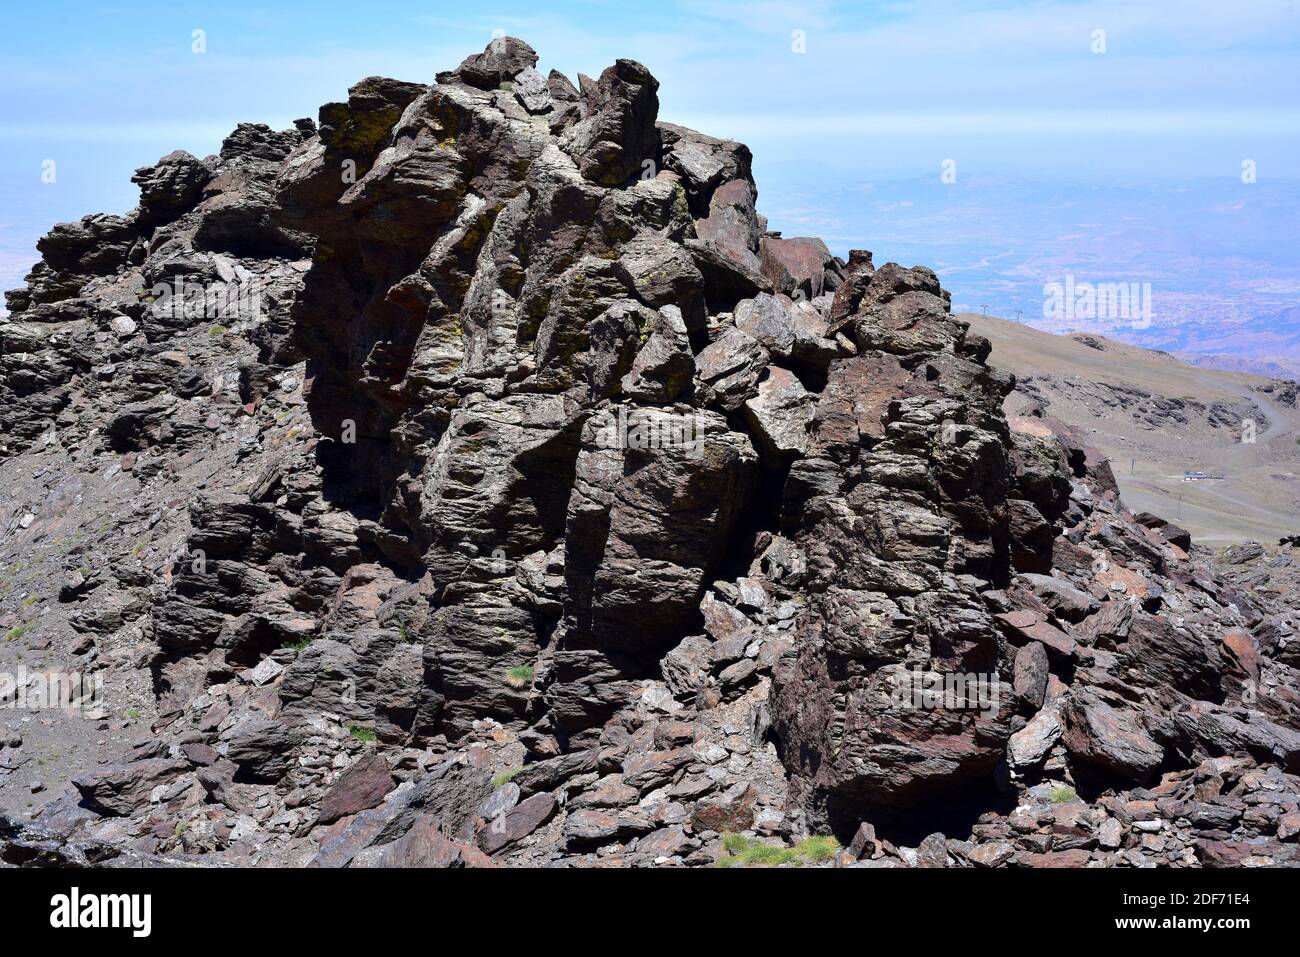 Schiste noir dans le parc national de la Sierra Nevada. Le schist est une roche métamorphique. Banque D'Images